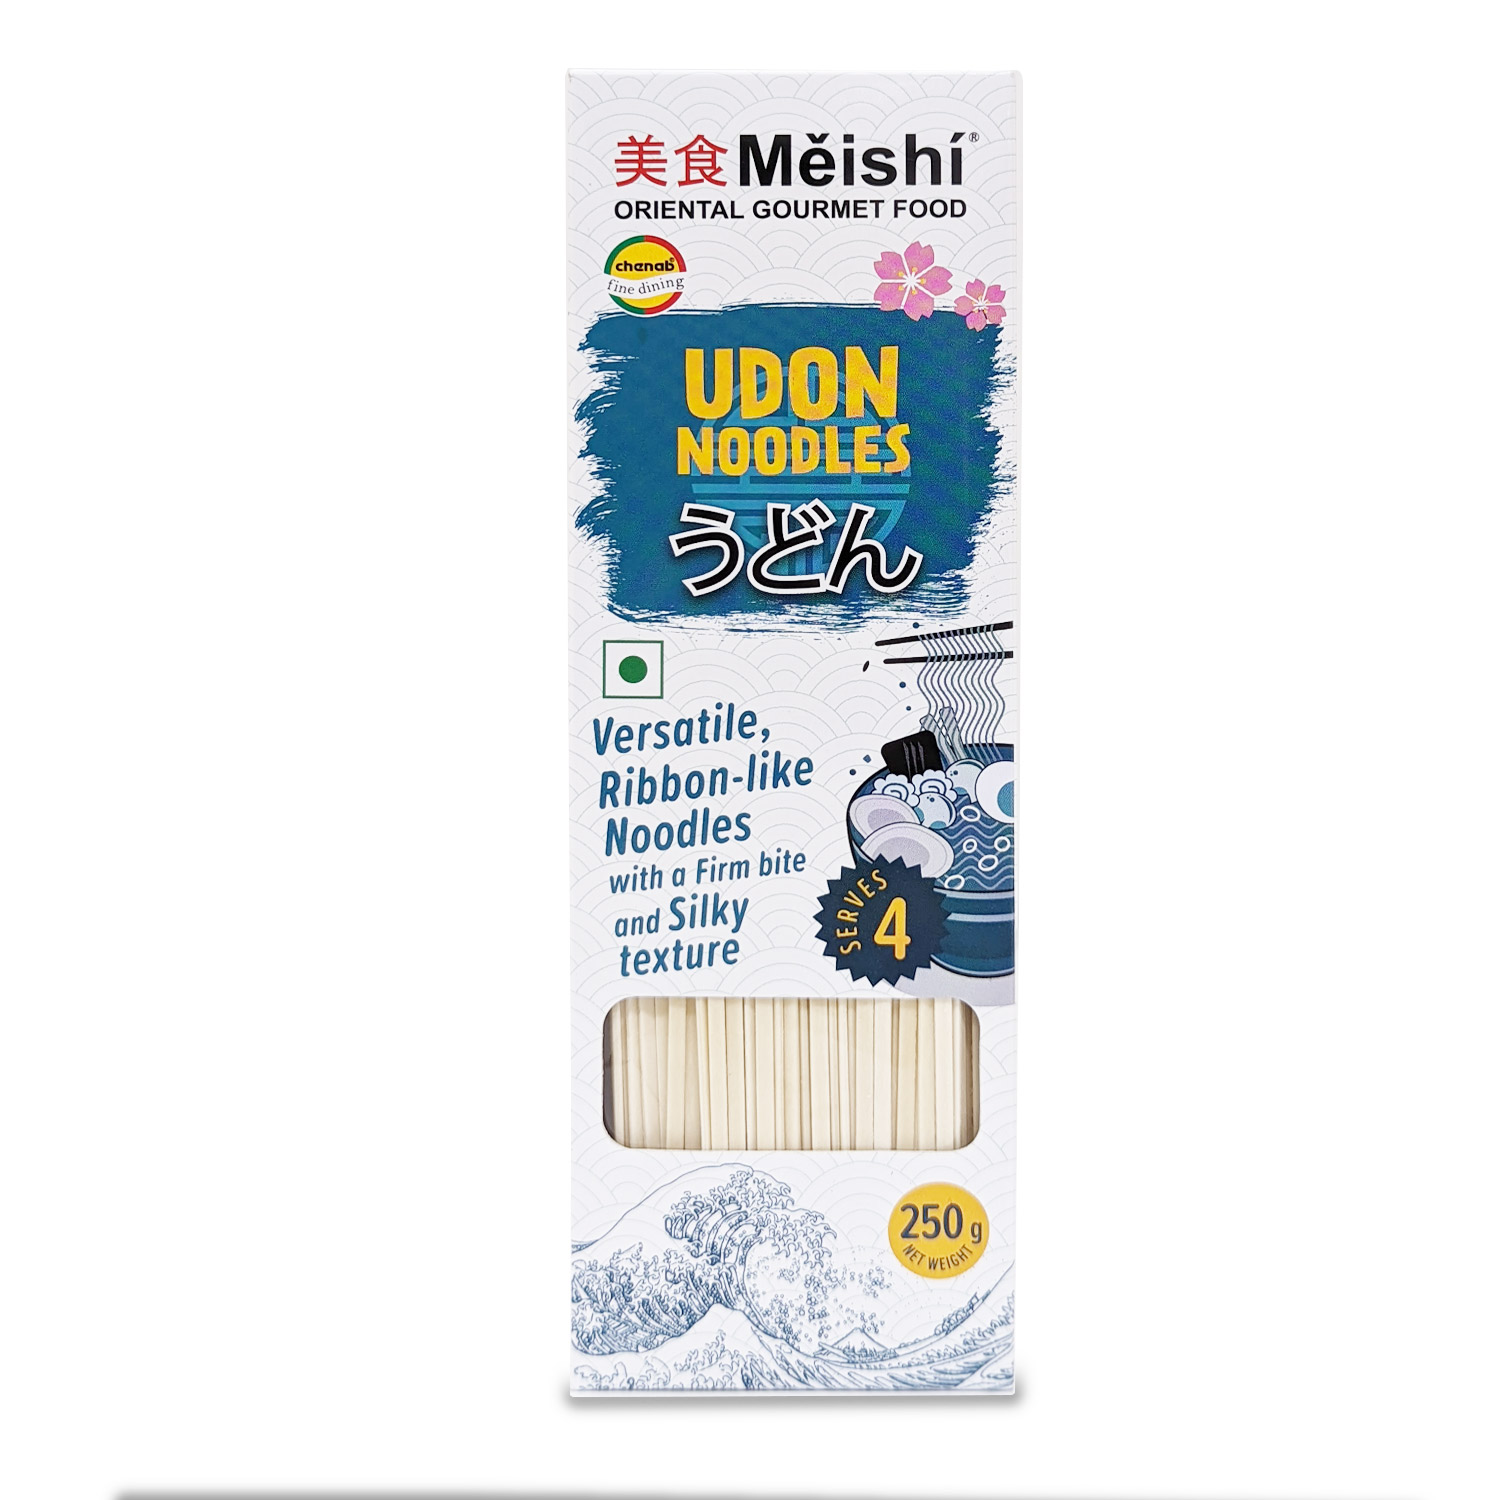 Meishi Udon Noodles, 250g